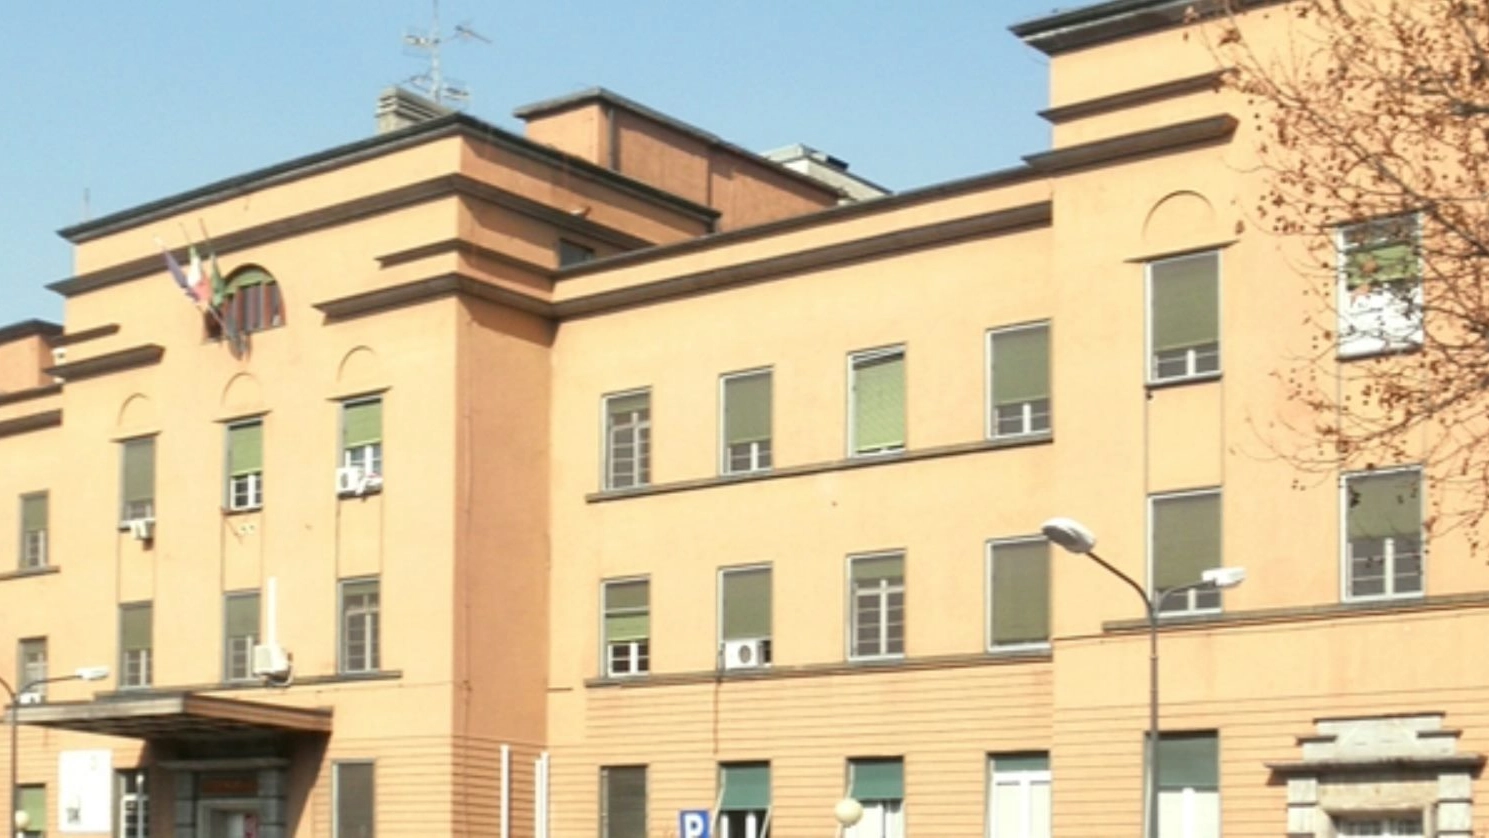  Fondazione Irccs Istituto Neurologico Carlo Besta di Milano (Foto Facebook)